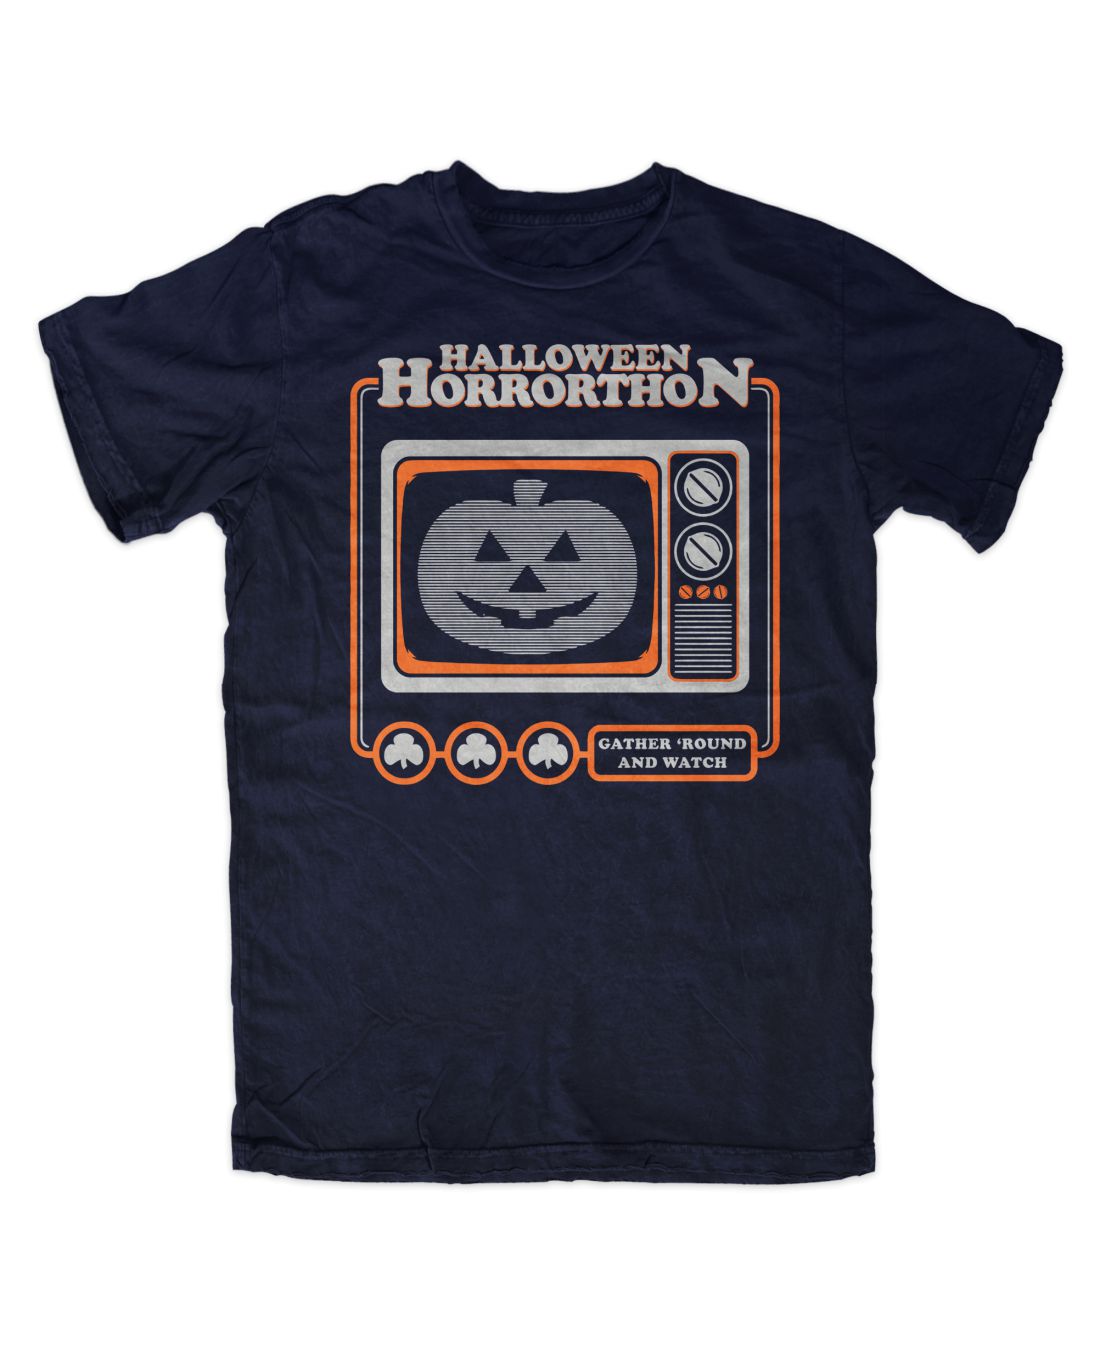 Halloween Horrorthon (navy blue póló)